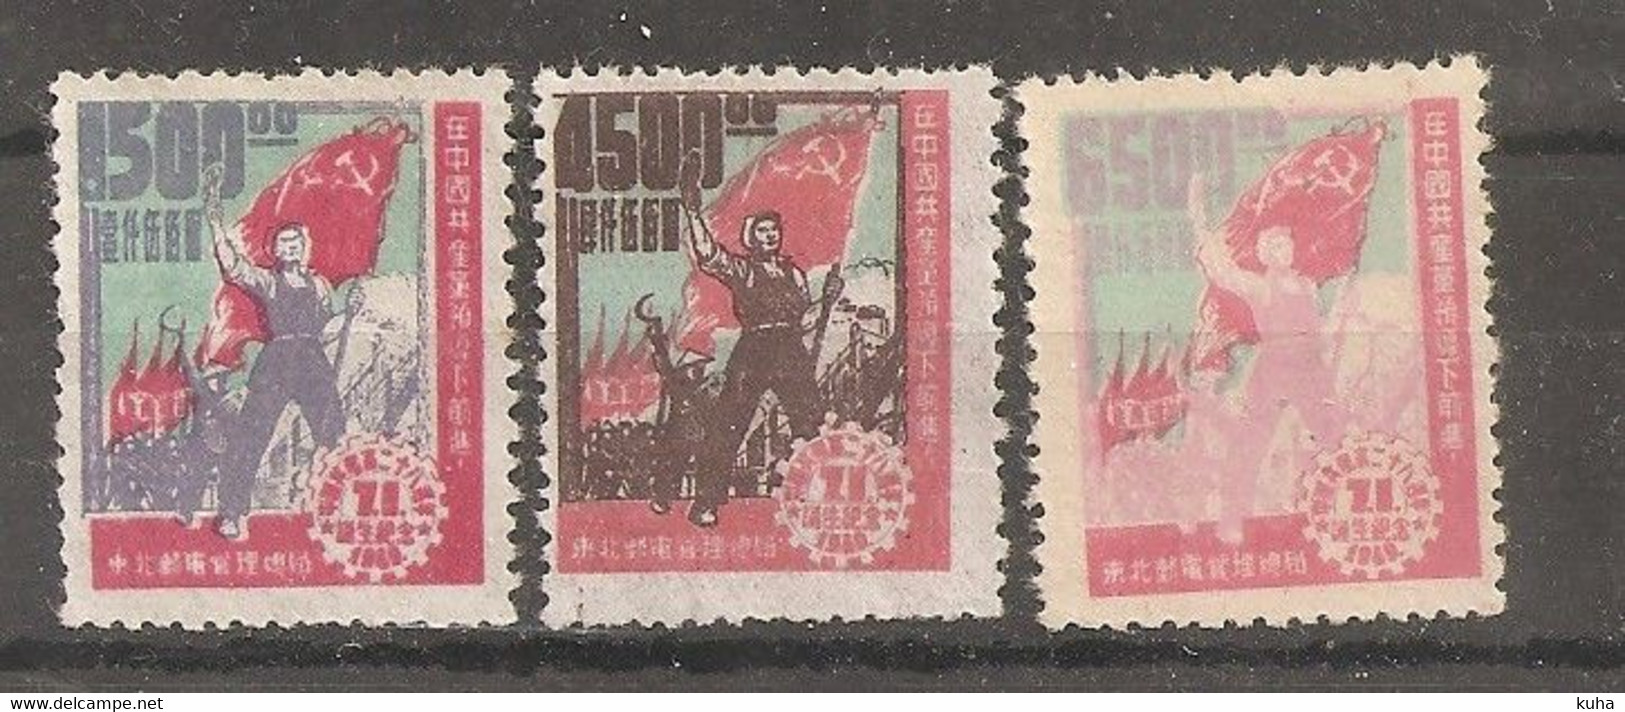 China Chine  Nord China 1949 - Chine Du Nord 1949-50